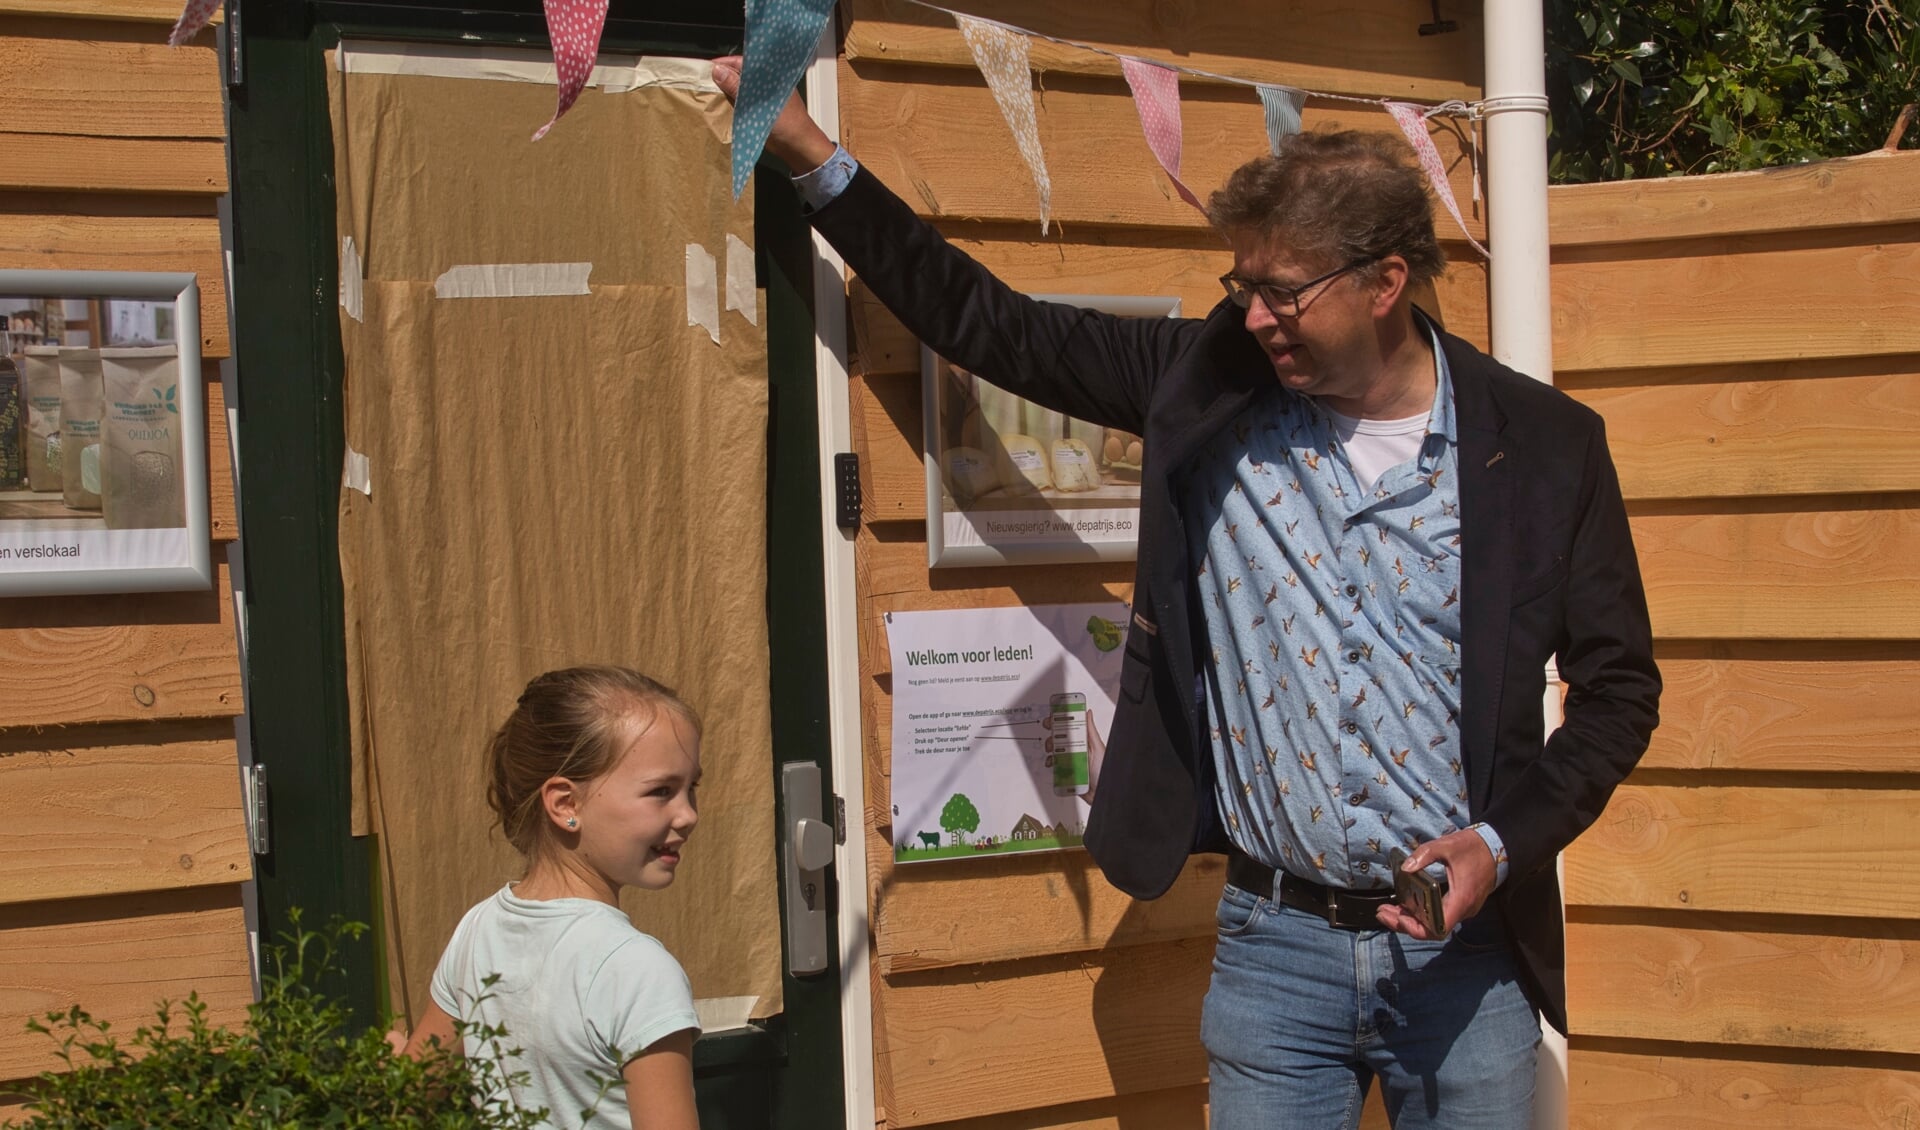 Wethouder Van Zeijts en Yuna Aardeman uit Eefde, een van de winnaars van de kleurwedstrijd, openen het verslokaal in Eefde. Foto: Stefan van Nieuwenhoven/Zutphens Persbureau